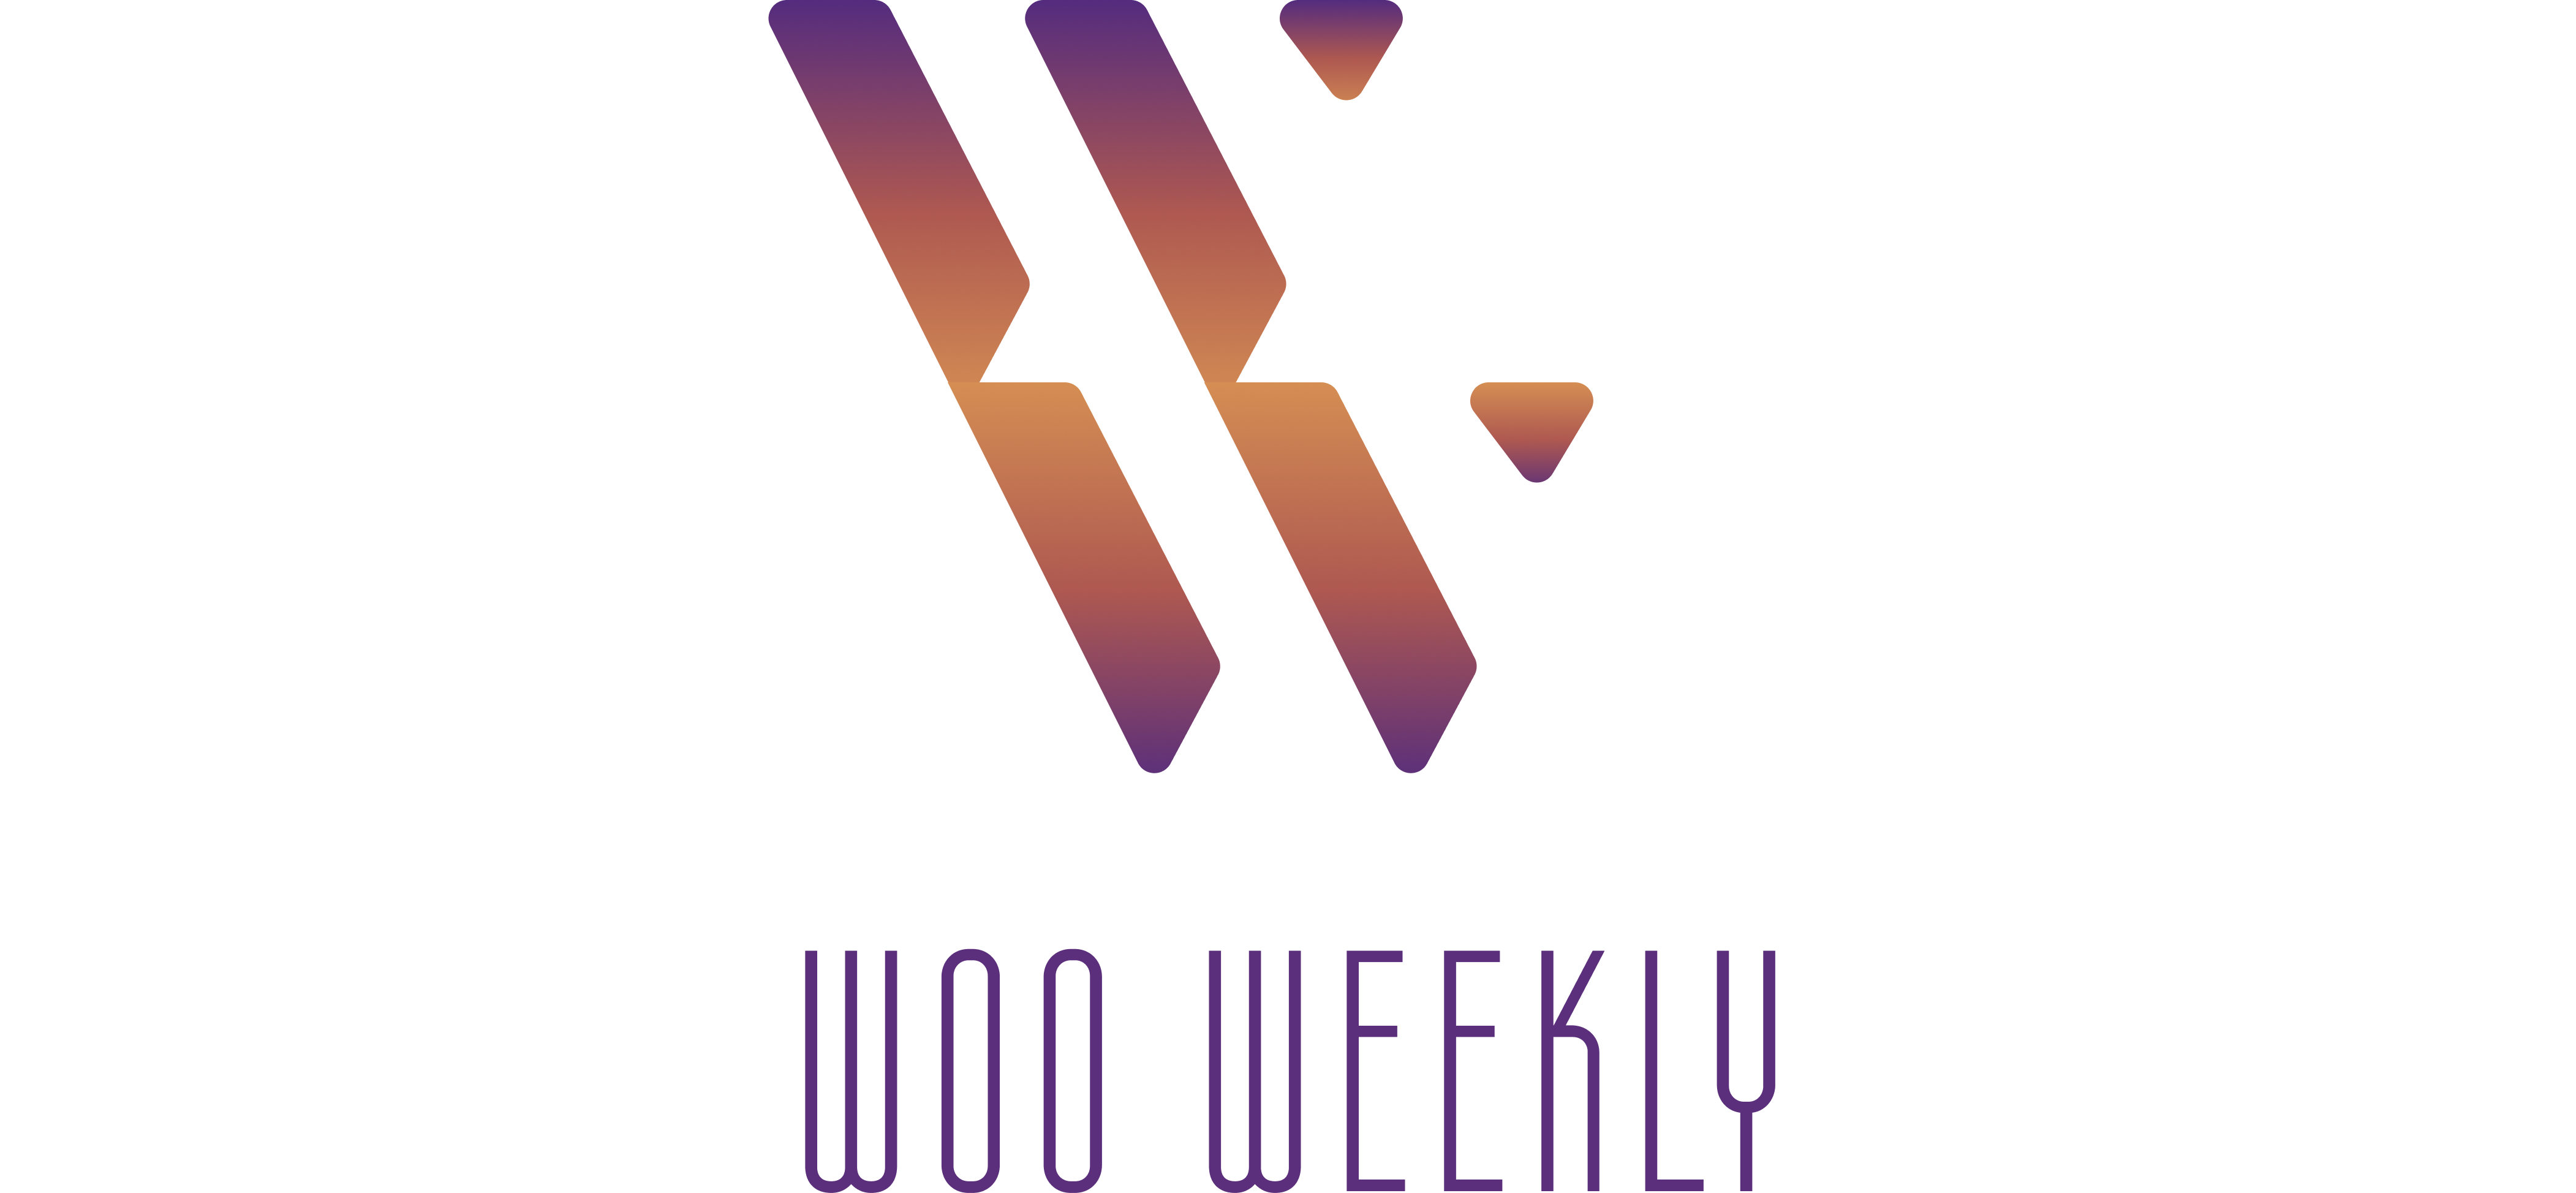 WooWeekly logo